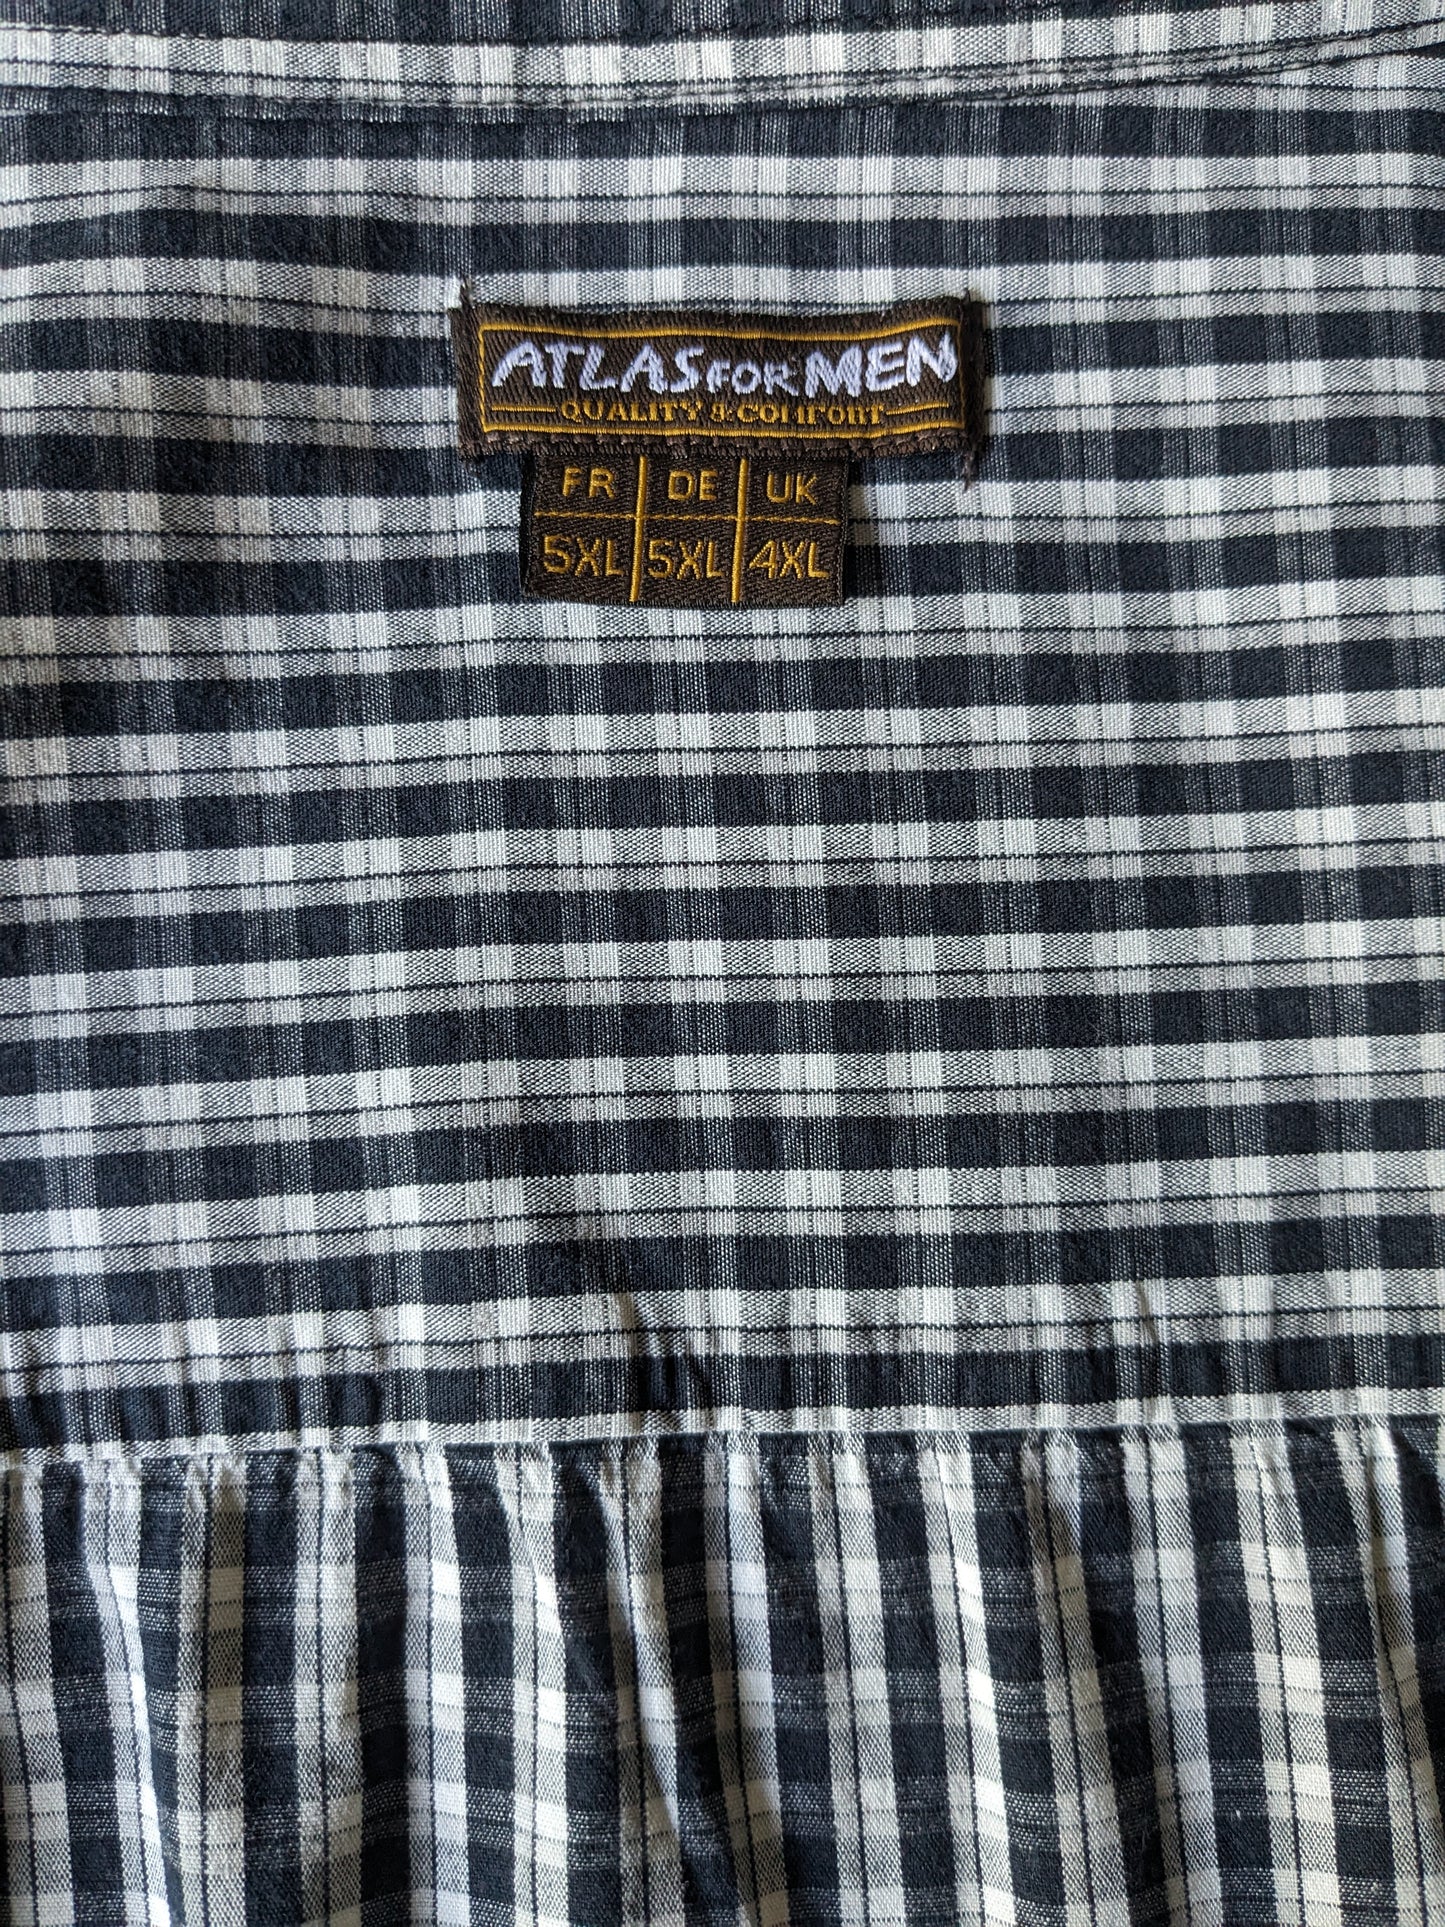 Atlas pour hommes chemise. Black beige vérifié. Taille 5xl / xxxxxl.